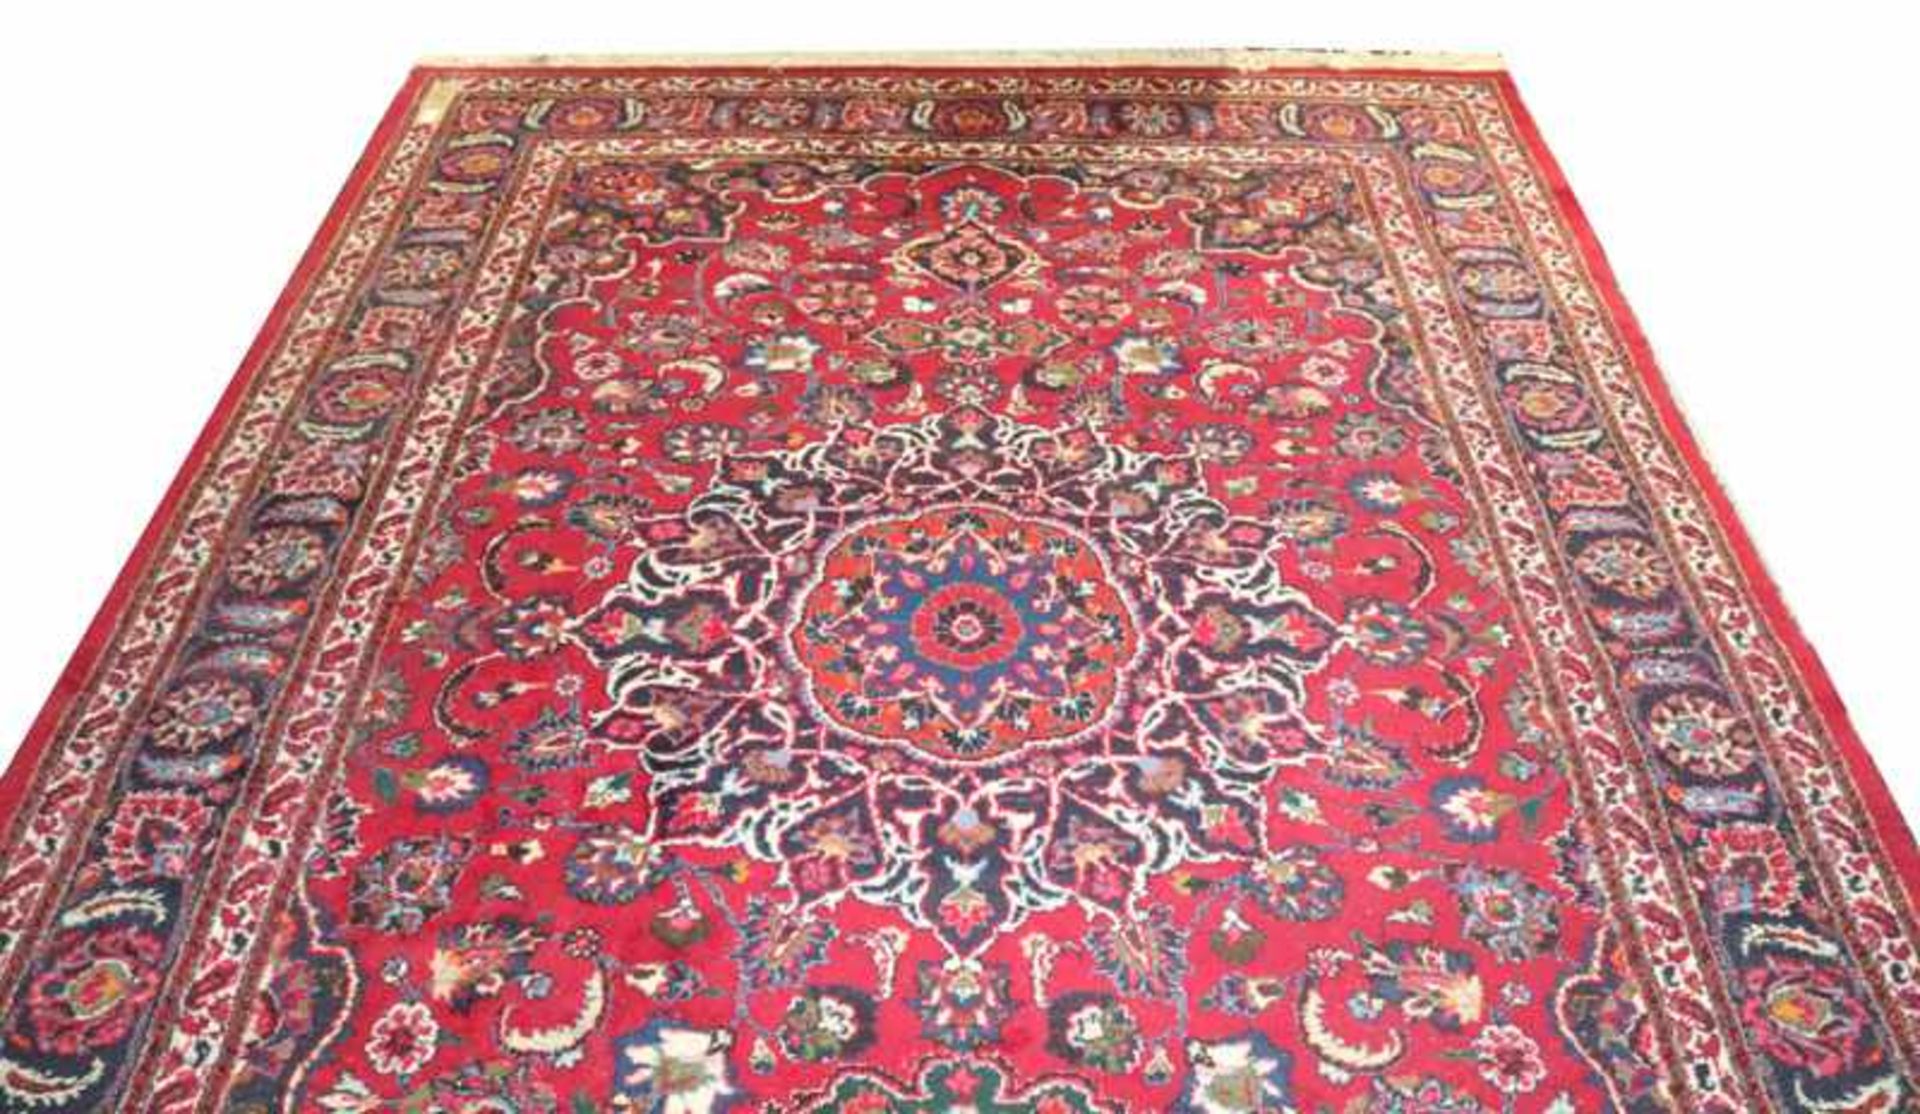 Teppich, rot/blau/bunt, 315 cm x 207 cm, Gebrauchsspuren, Einfassung teils beschädigt